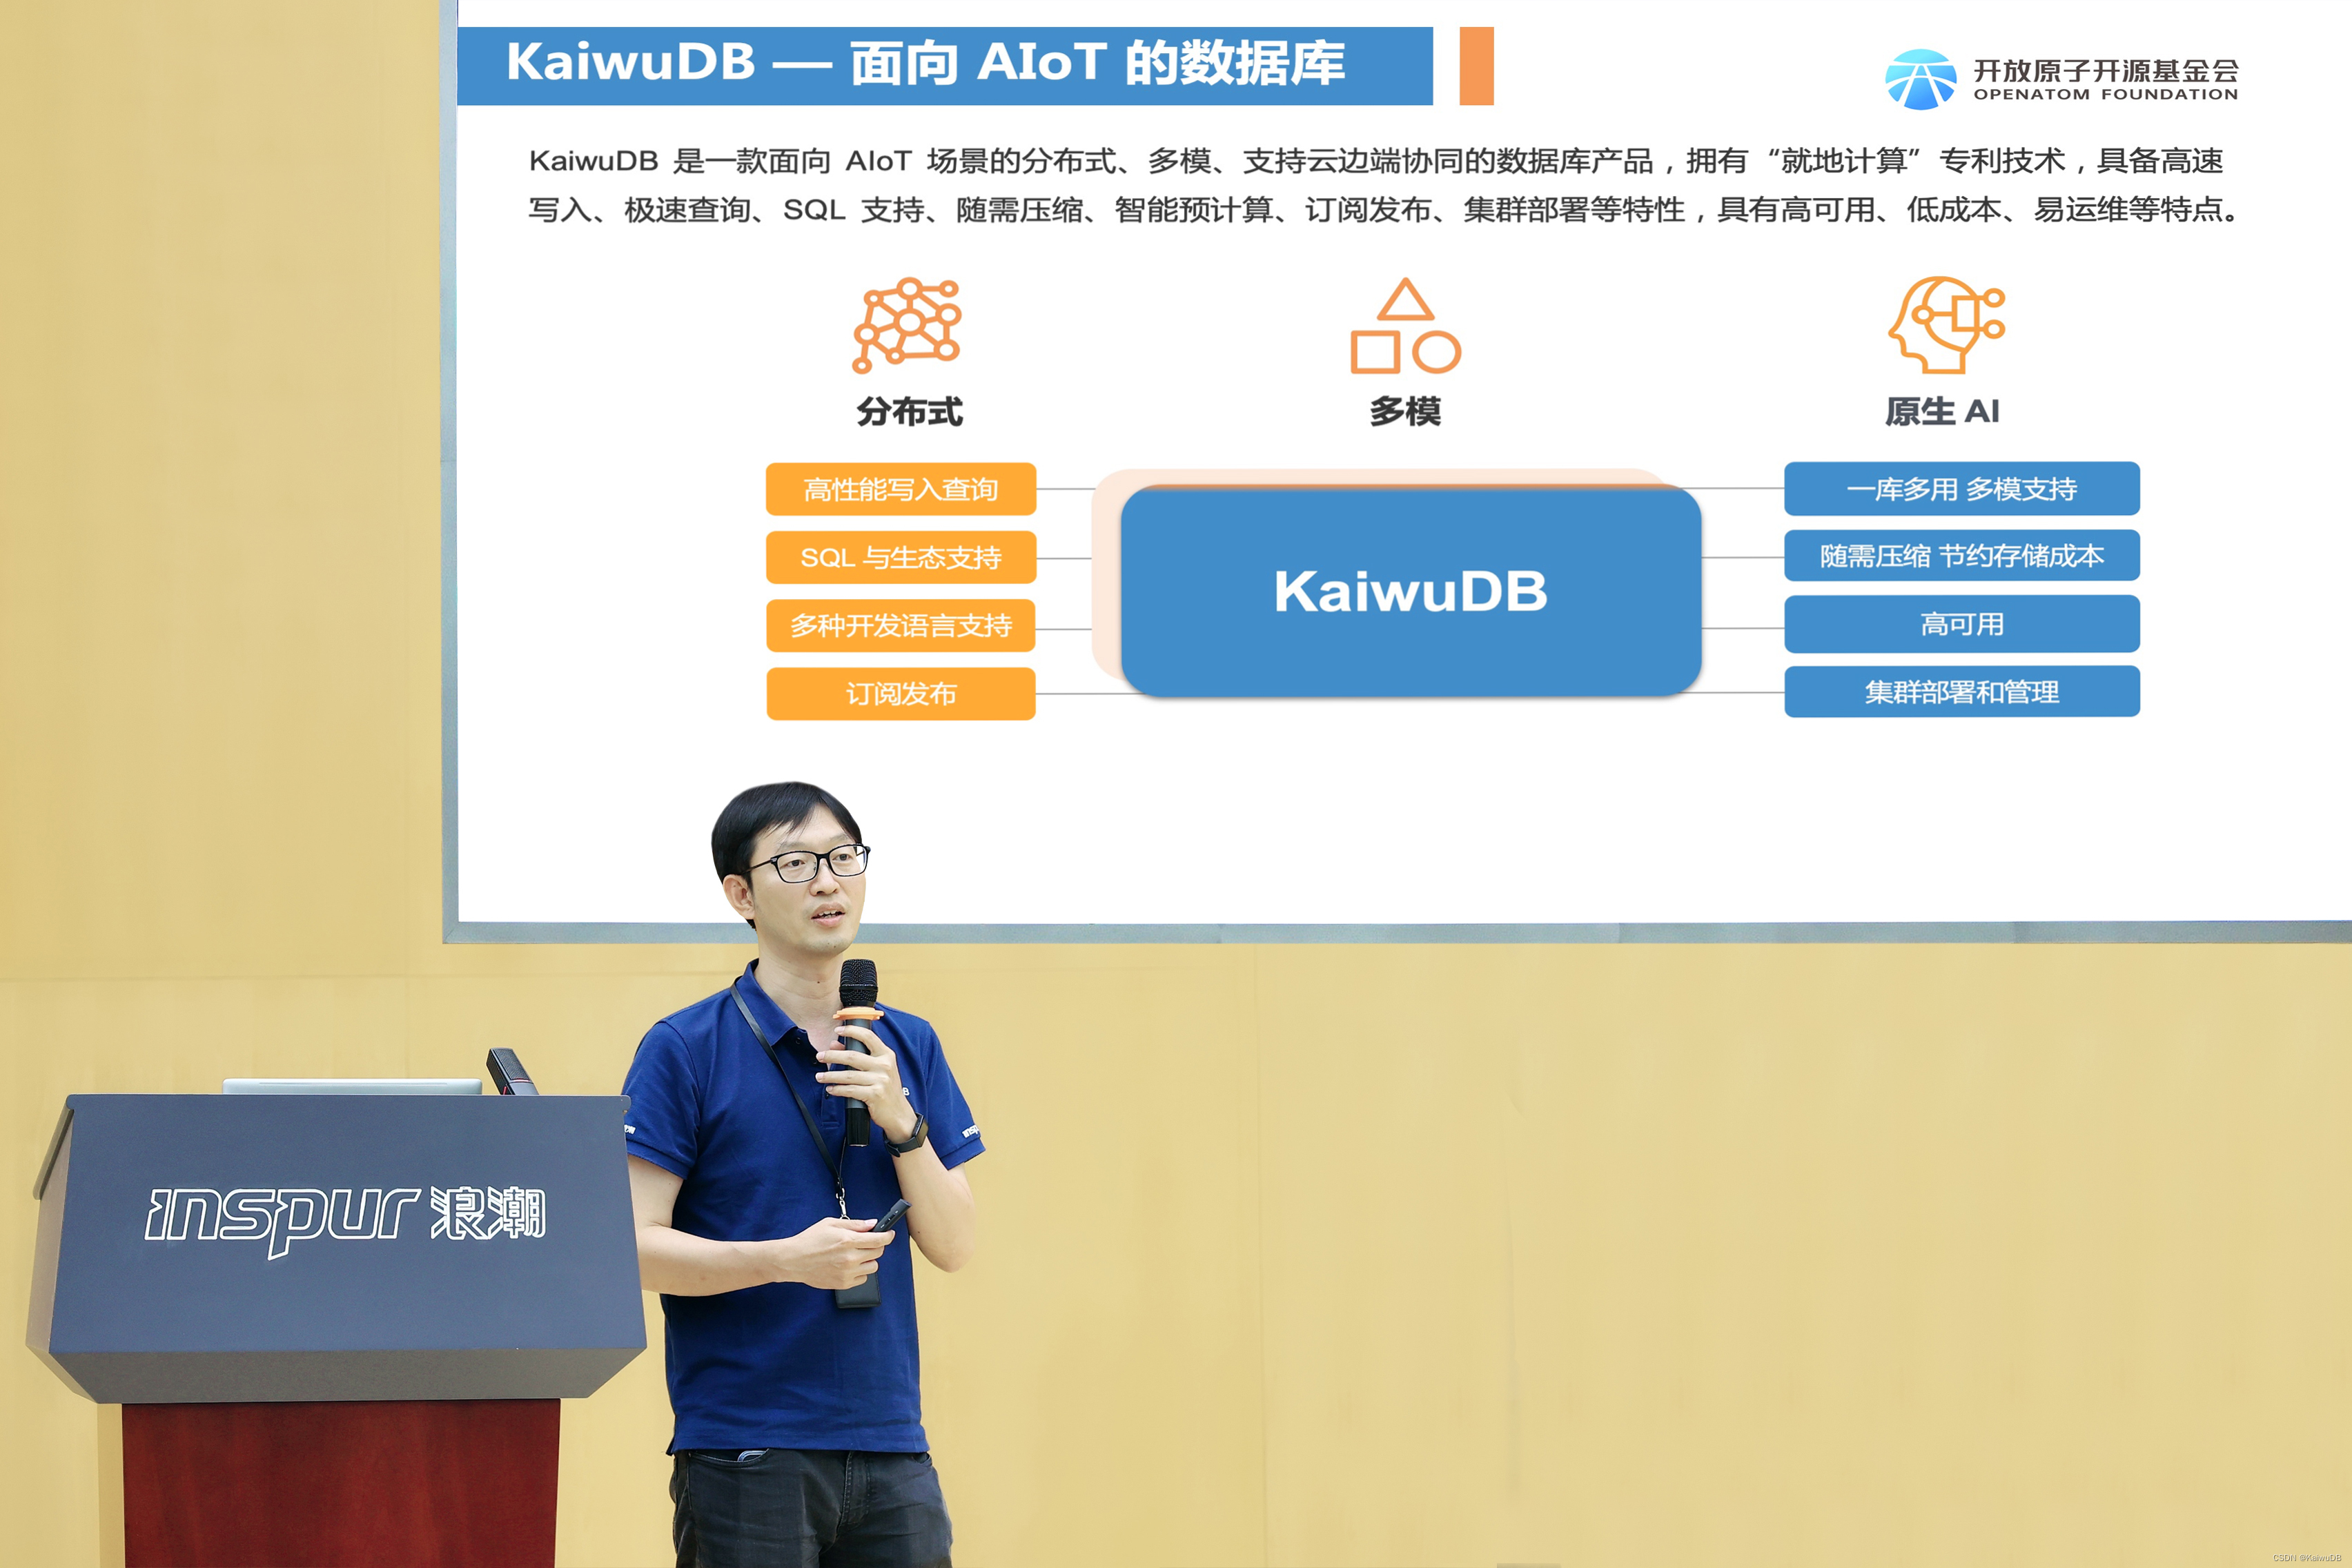 KaiwuDB 受邀出席“软件名城看济南”暨浪潮海岳软件技术大会